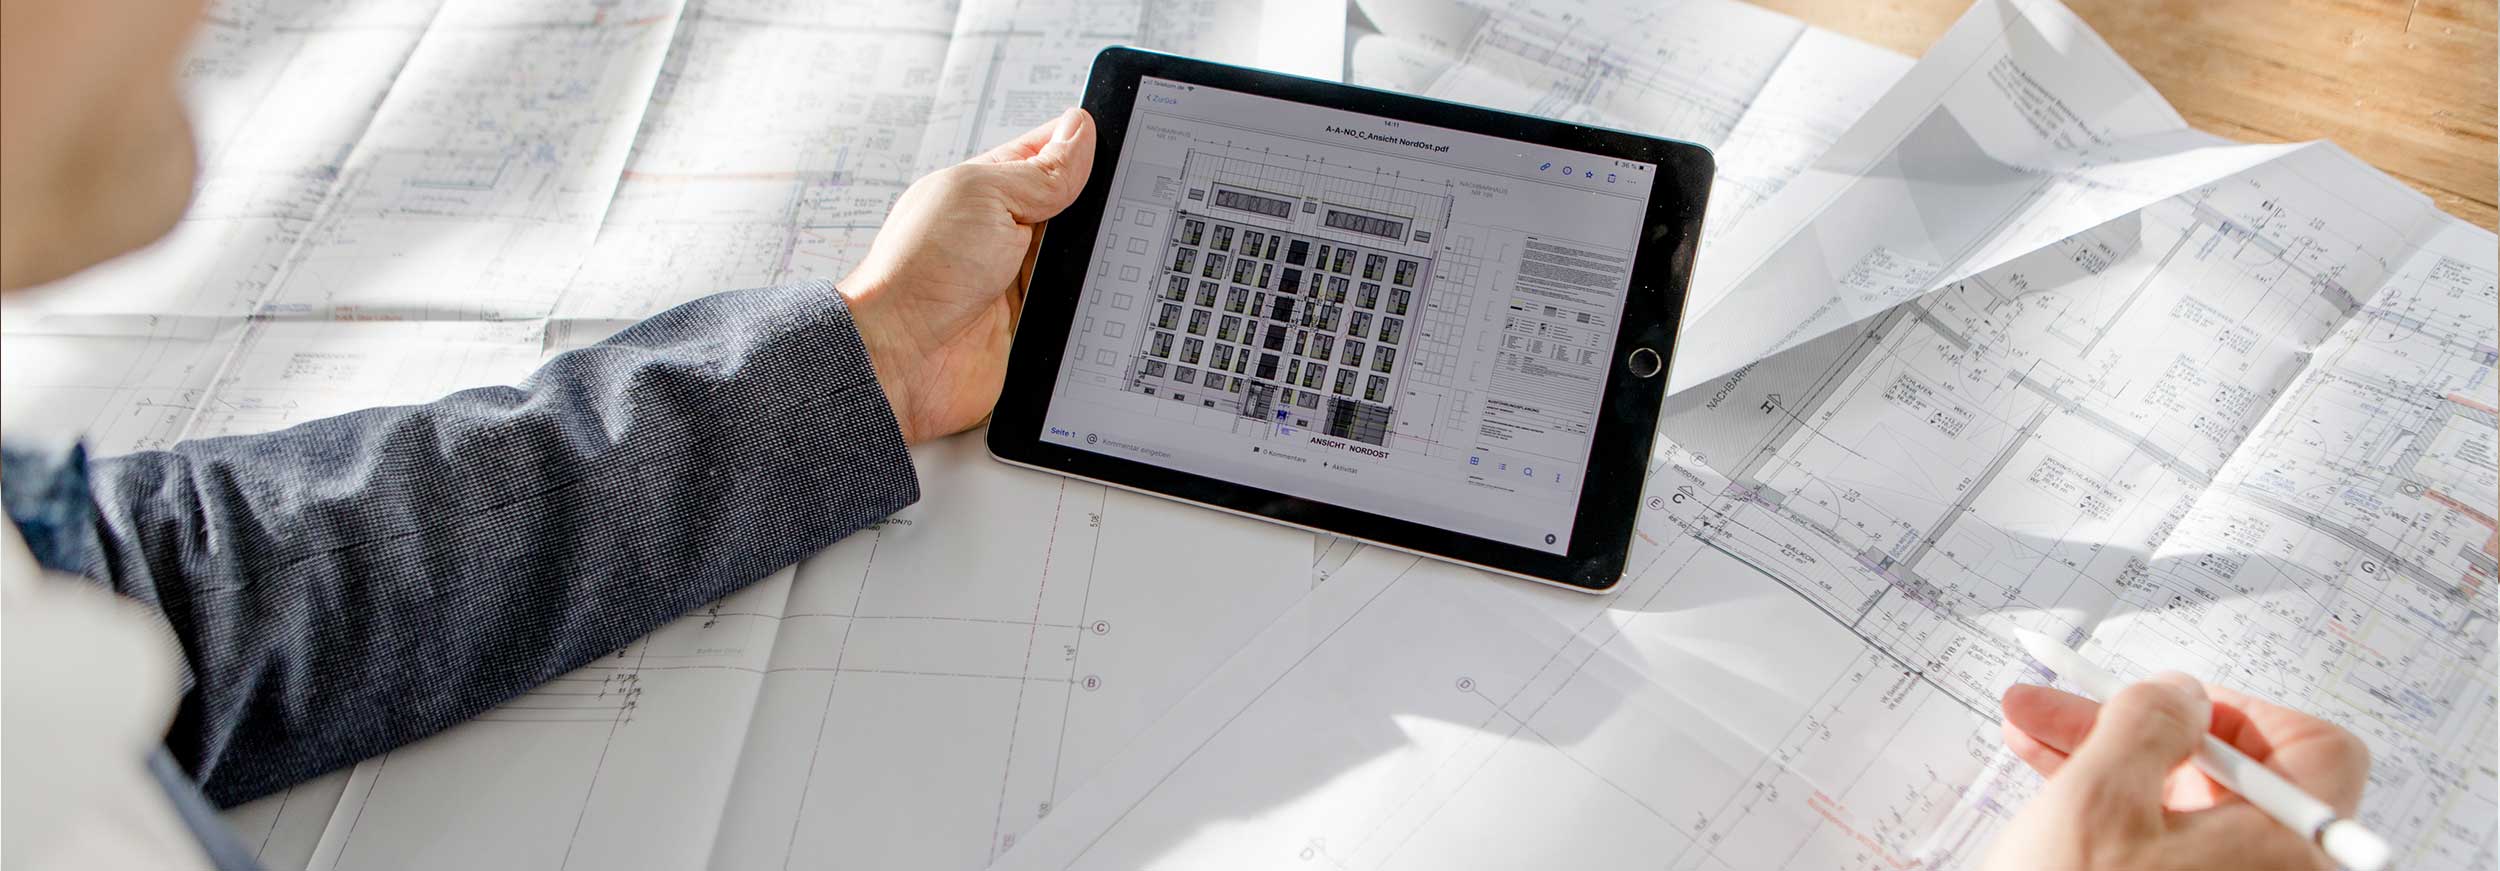 Case Köhler Bau- und Projektmanagement Architekt sitzt mit Tablet über Gebäudeplänen